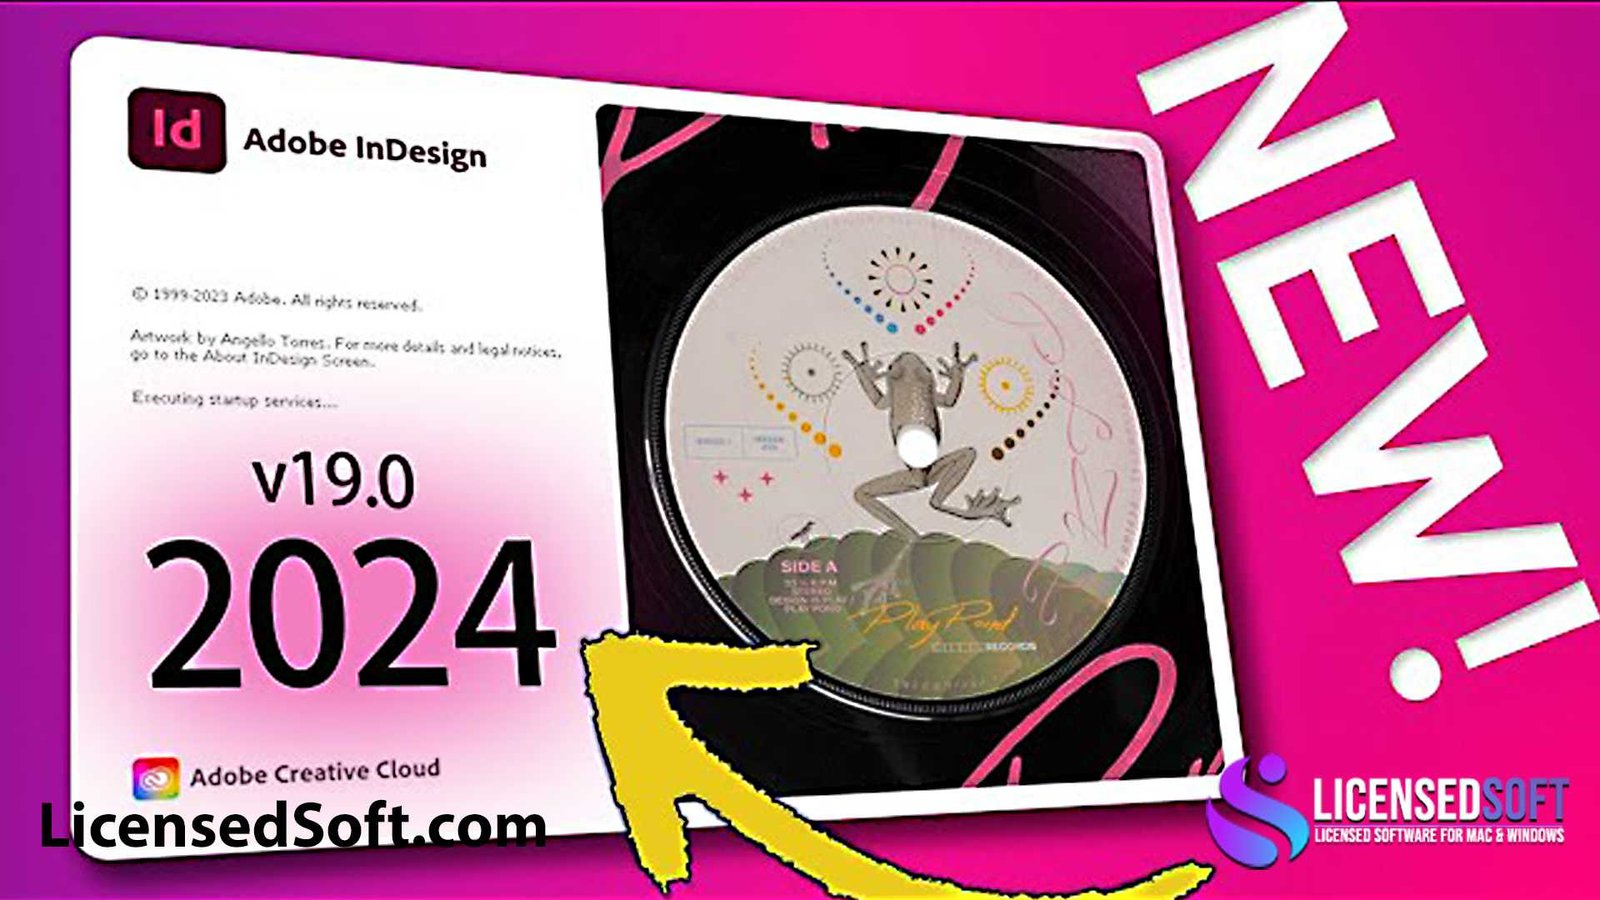 Adobe InDesign 2024 Full Version By LicensedSoft